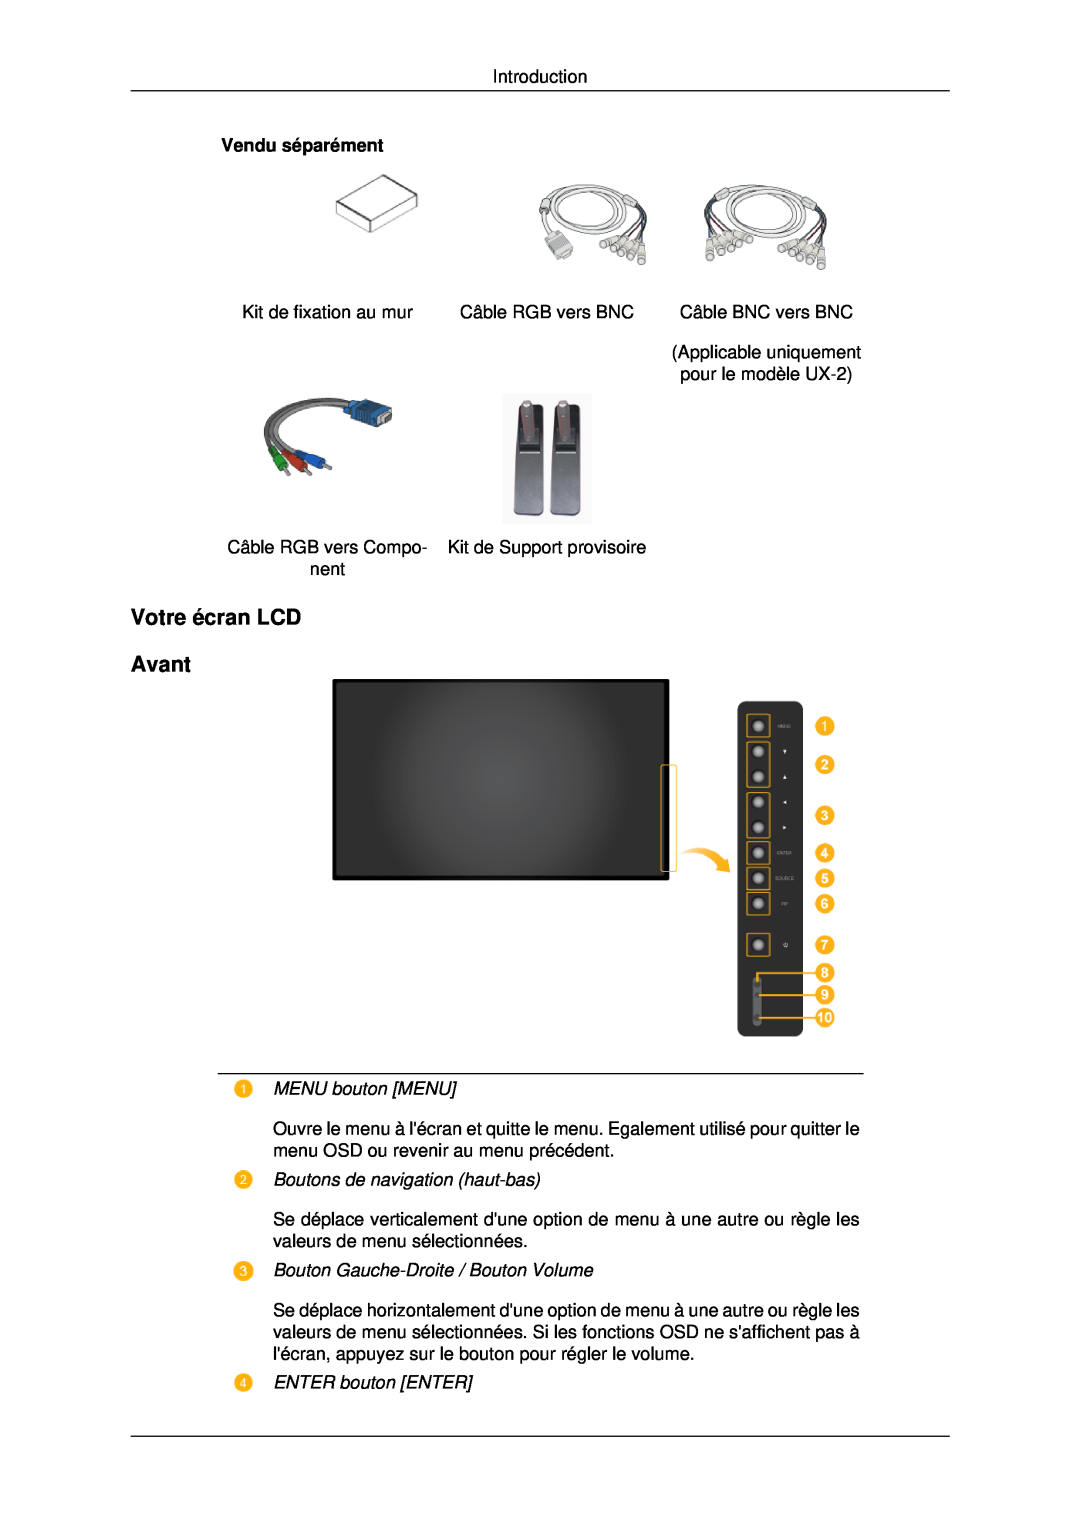 Samsung LH40MRPLBF/EN manual Votre écran LCD Avant, MENU bouton MENU, Boutons de navigation haut-bas, ENTER bouton ENTER 